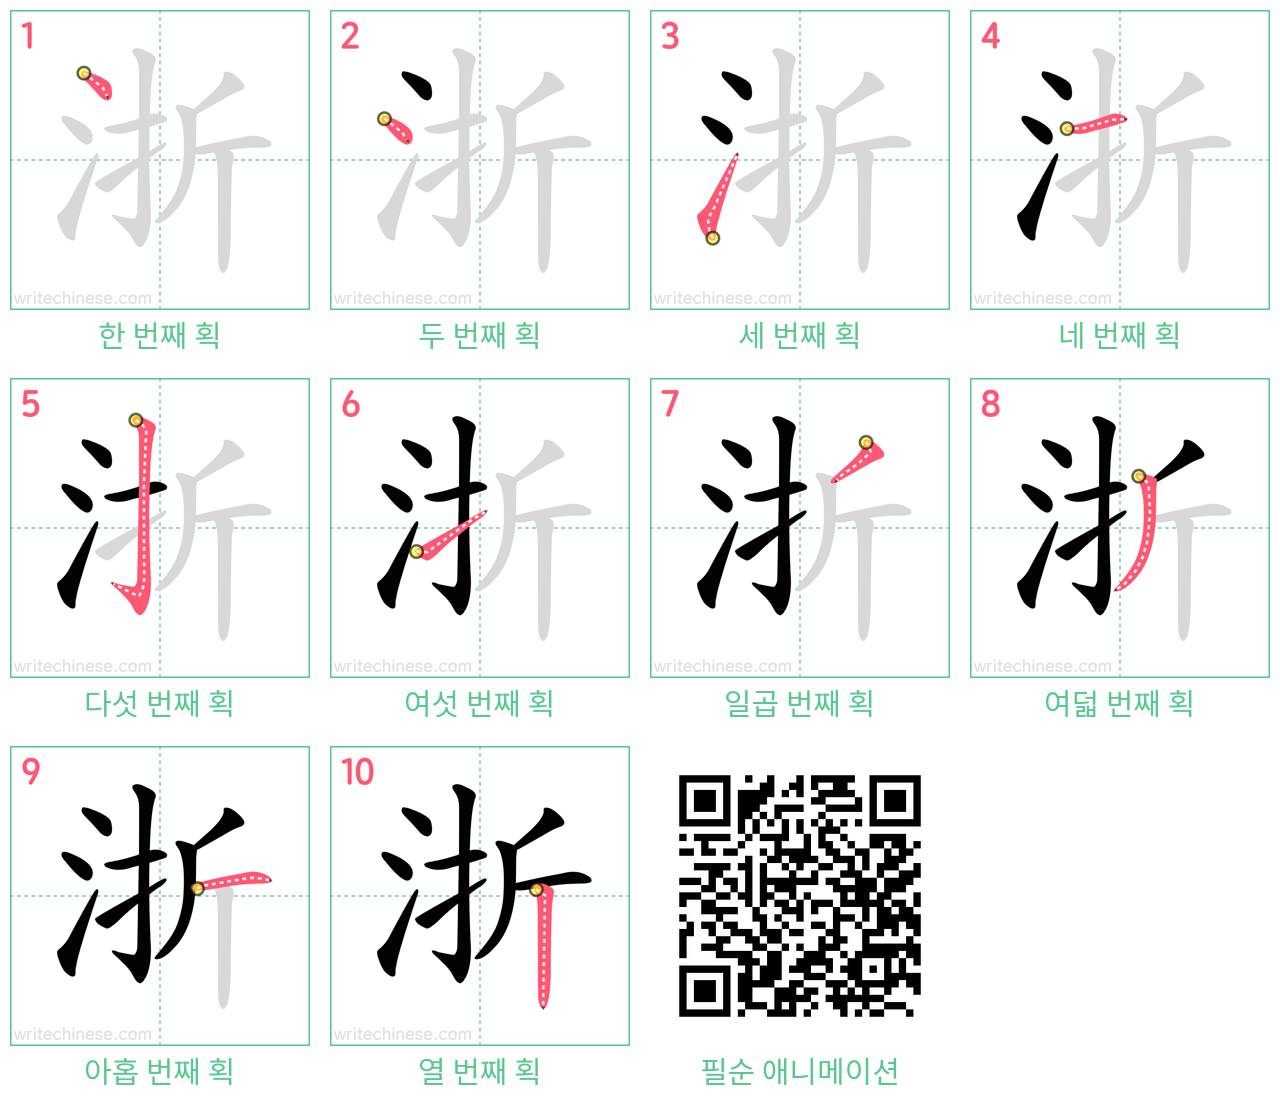 浙 step-by-step stroke order diagrams